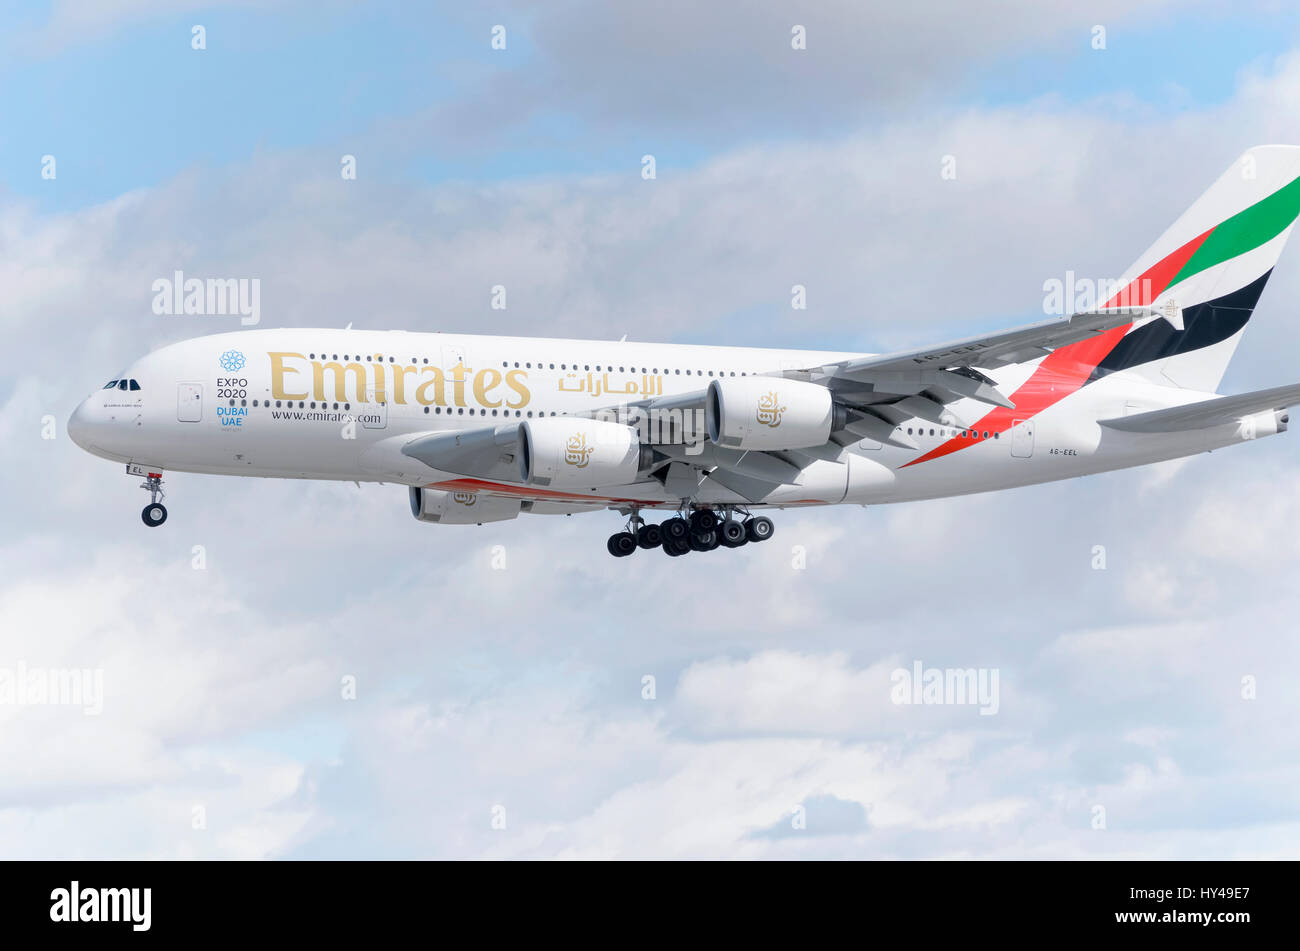 Avion Airbus A380, de l'Emirates airline, est l'atterrissage à Madrid - Barajas, Adolfo Suarez l'aéroport. C'est le plus grand avion de passagers. Les nuages. Banque D'Images